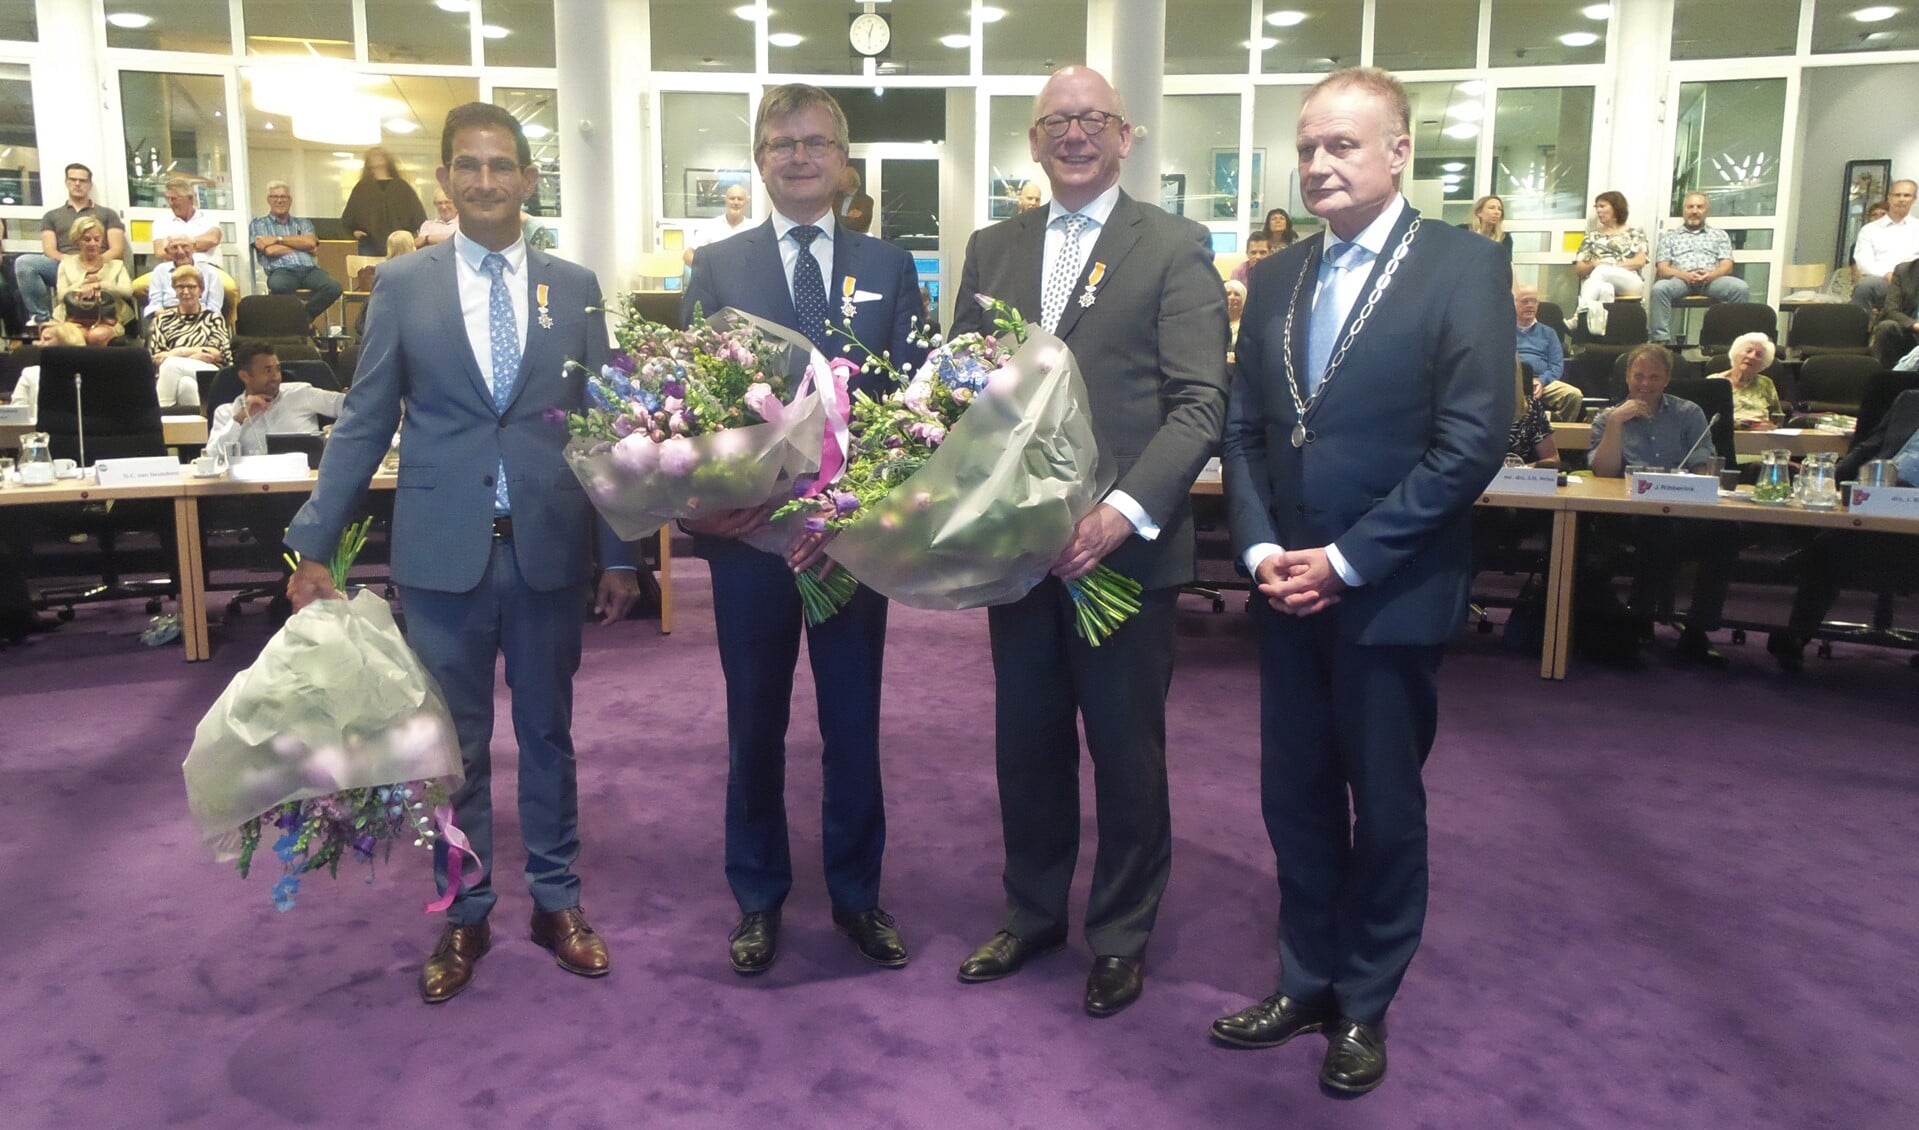 Maarten Hoelscher, Bert Rebel en Kees de Kok kregen een koninklijke onderscheiding van burgemeester Heldoorn.